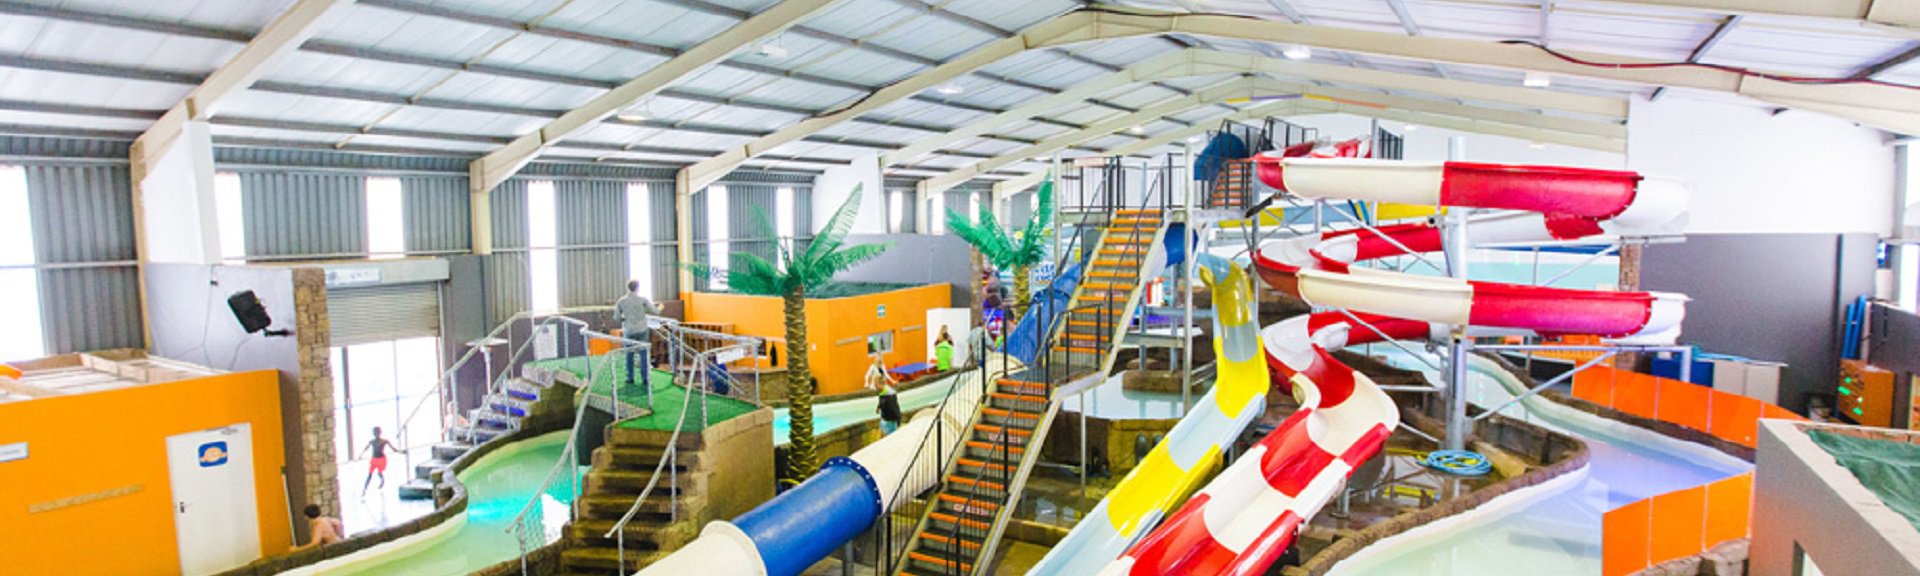 Wet Rock Adventures | Durban | Kids Indoor Party and Play Venue